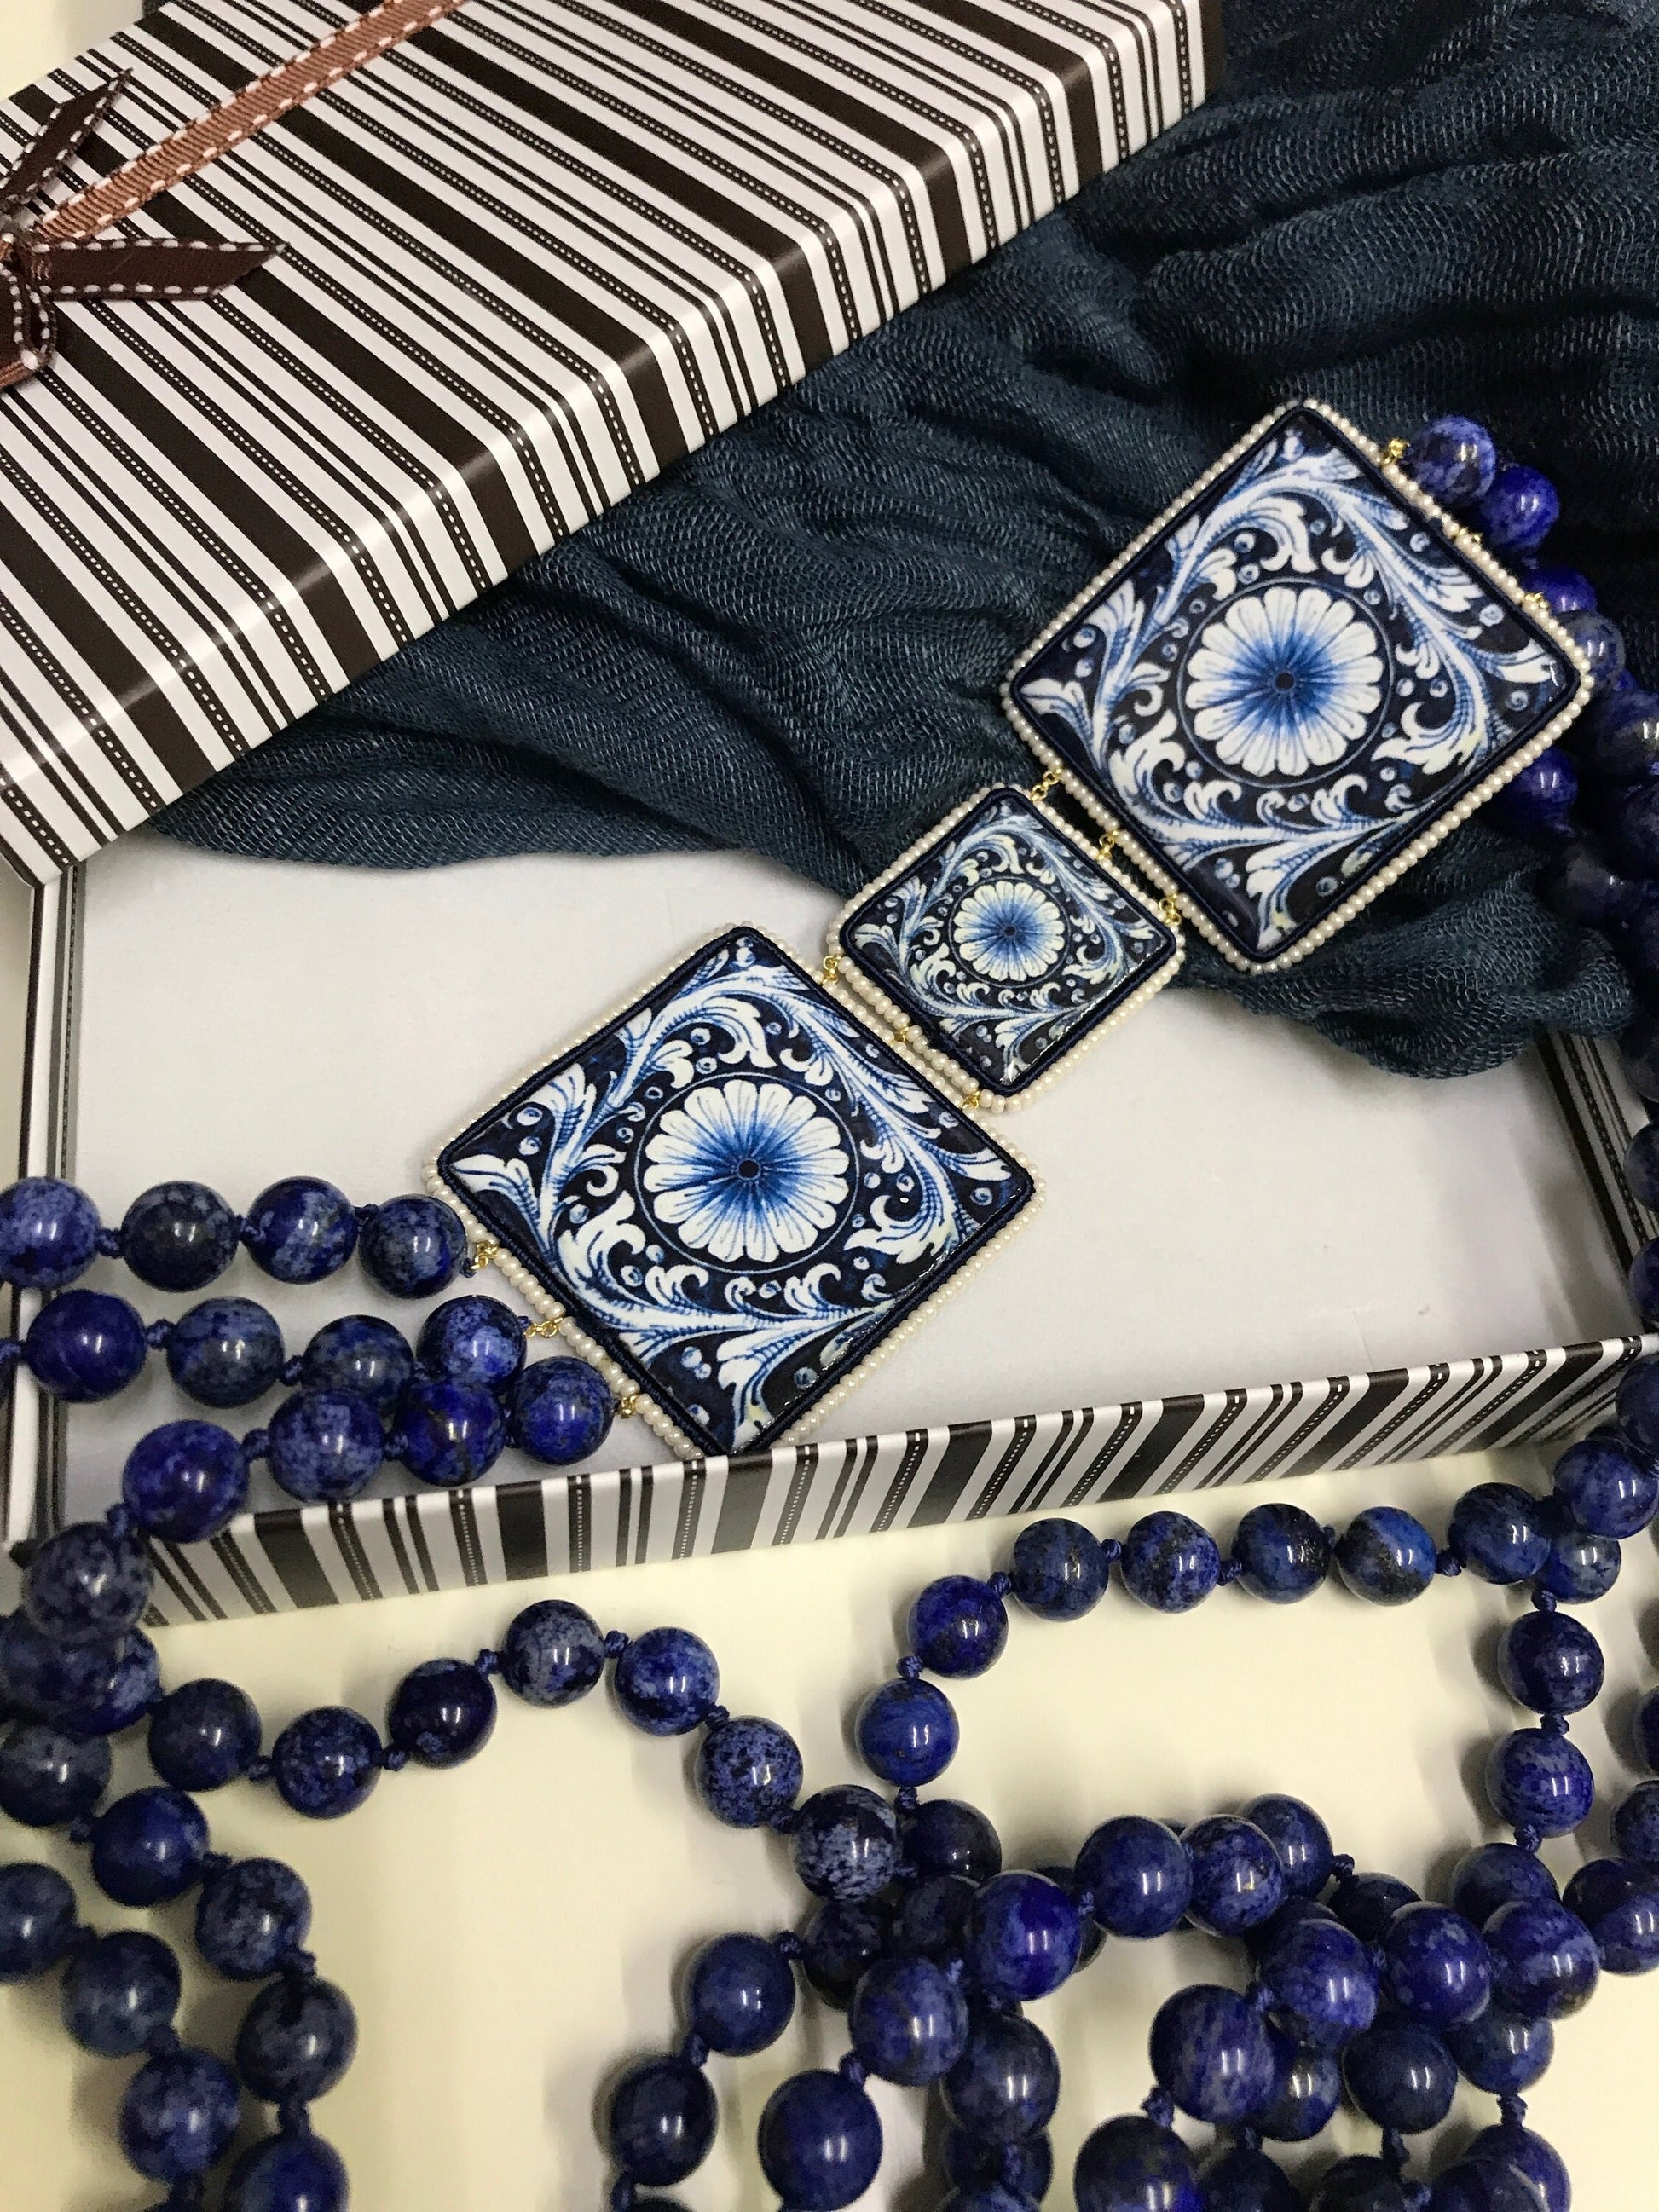 Collana siciliana, collana annodata a mano, triplo filo di lapislazzuli e mattonelle ceramica Caltagirone, collana blu, collana maiolica.!